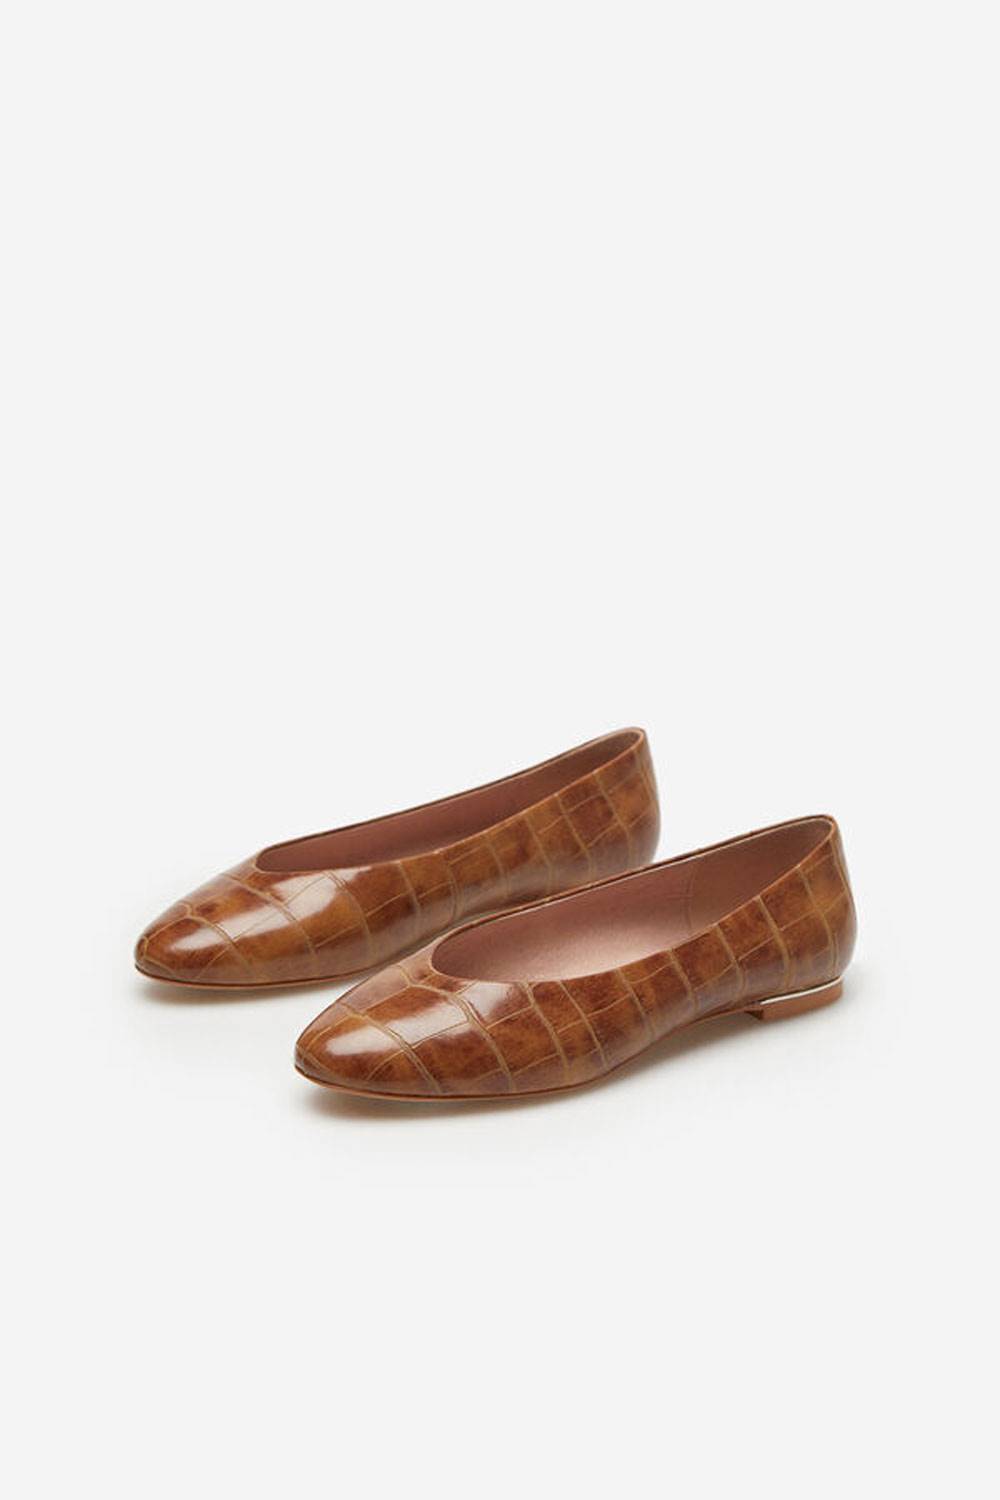 Zapatos Bailarina con grabado de cocodrilo de Cortefiel, 69,99€